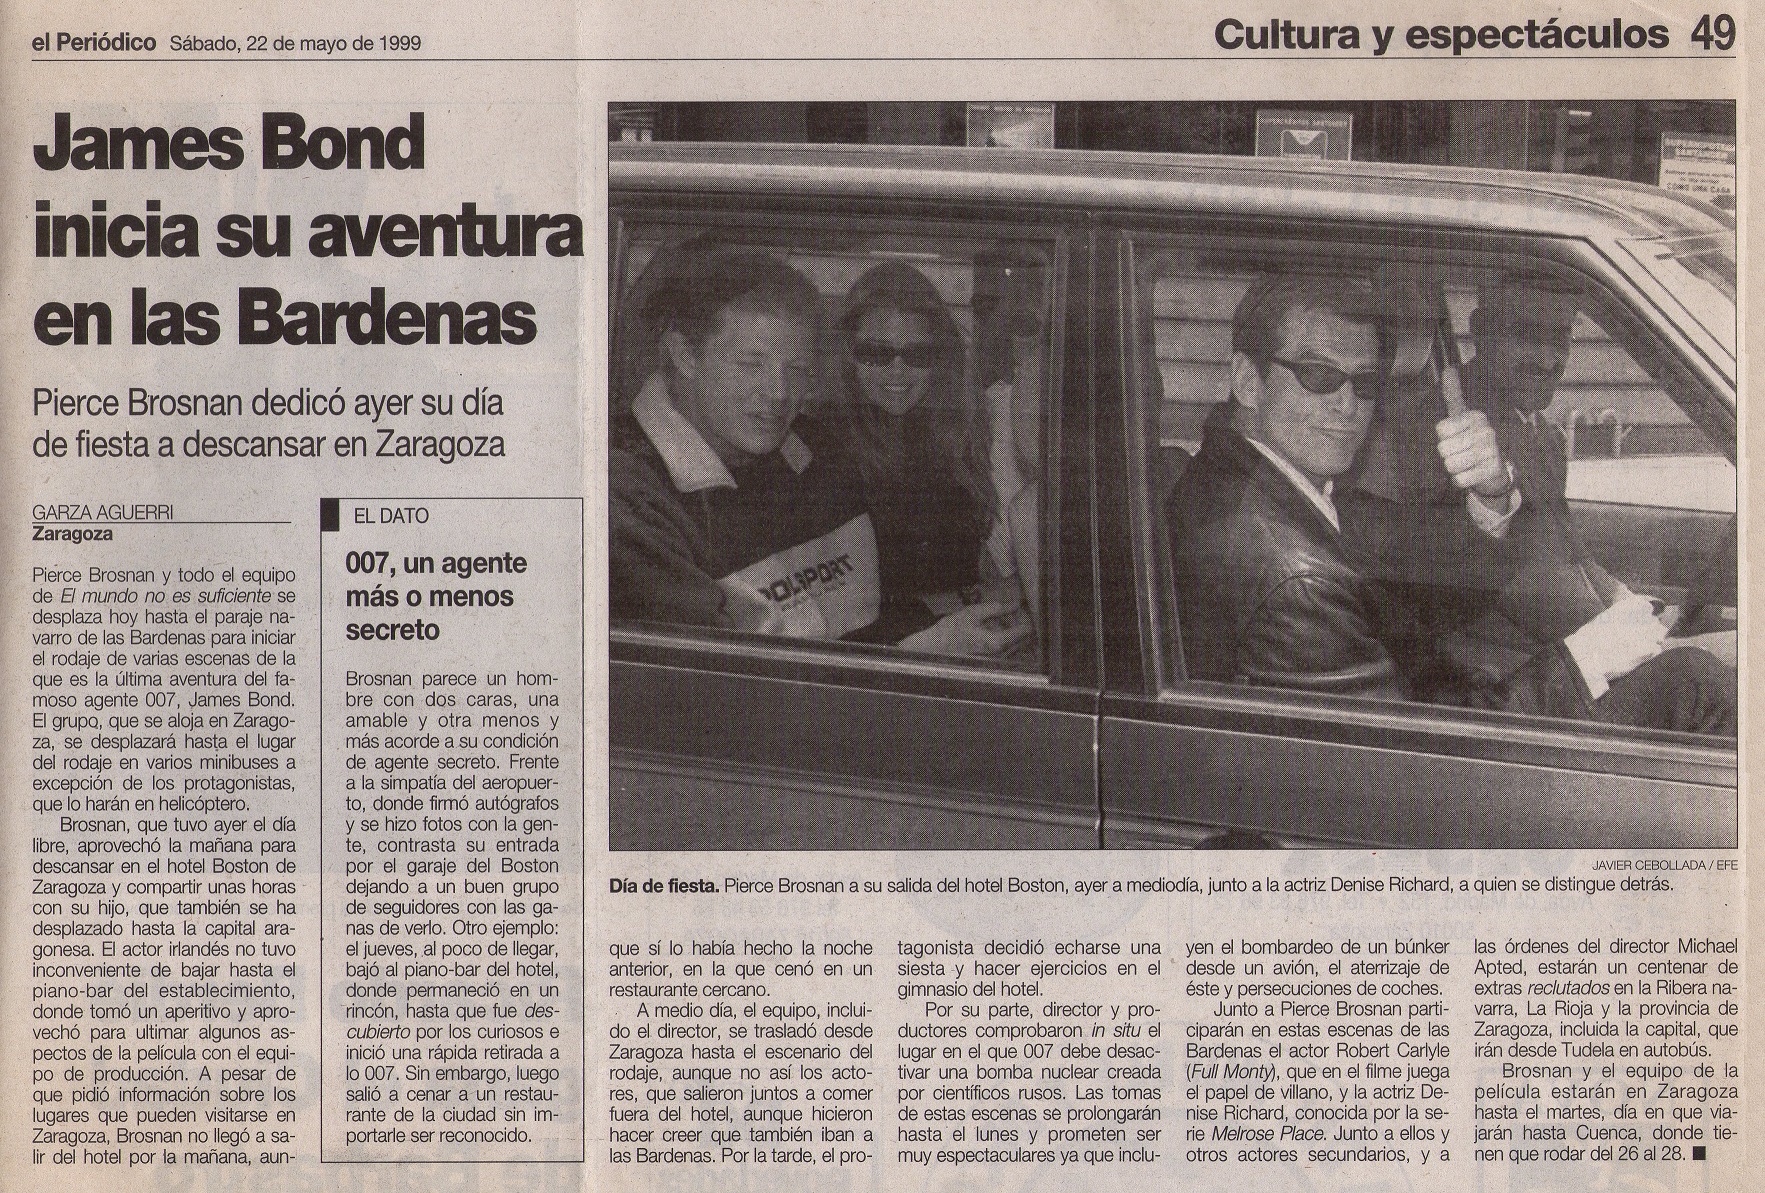 19 1999 05 22 El Periodico de Aragon 49 Rodaje Bardenas